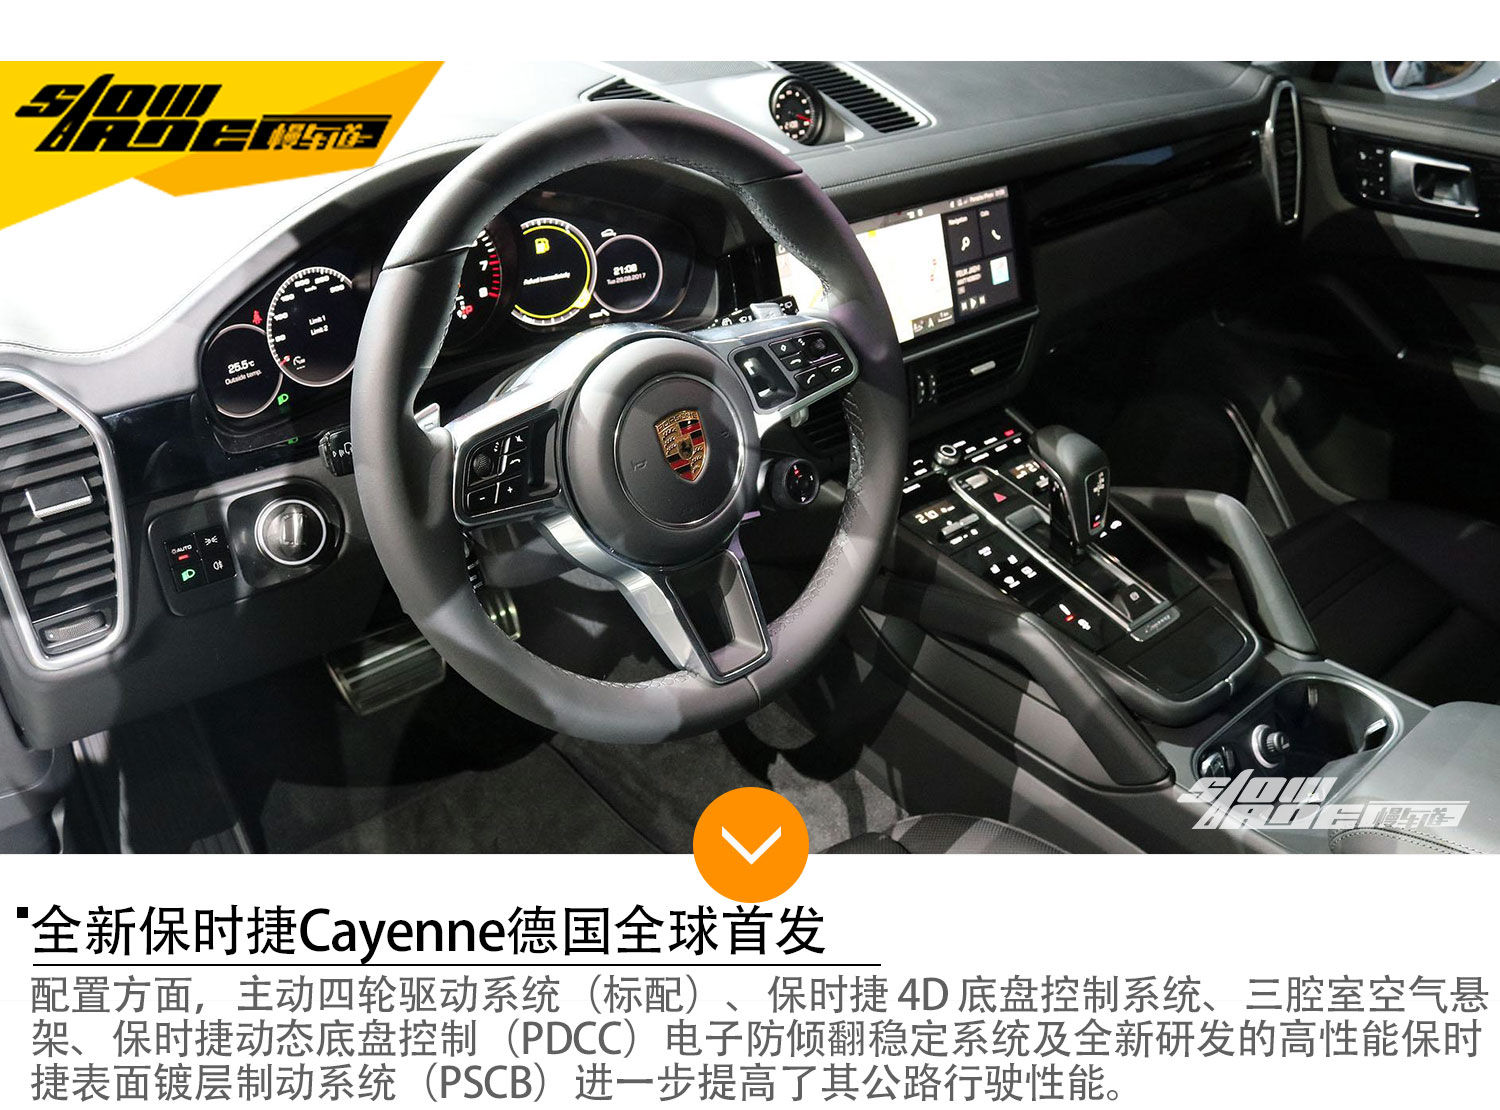 全新保时捷Cayenne全球首发 最大功率250kW